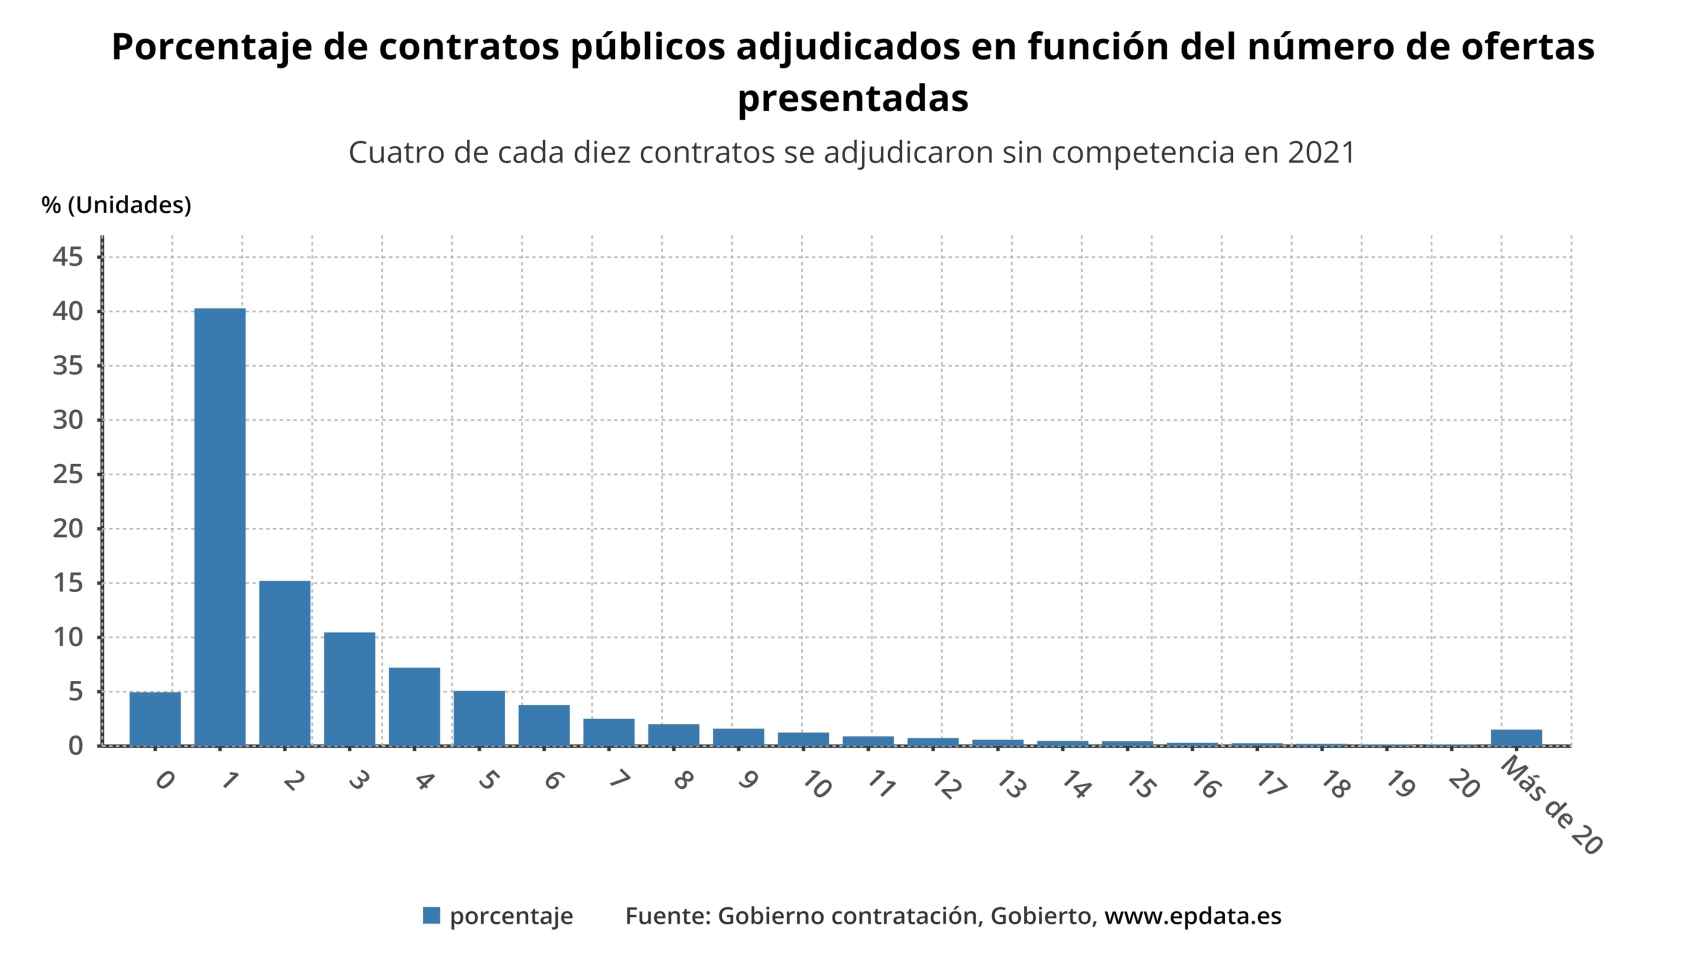 Contratos públicos adjudicados en función del número de ofertas.